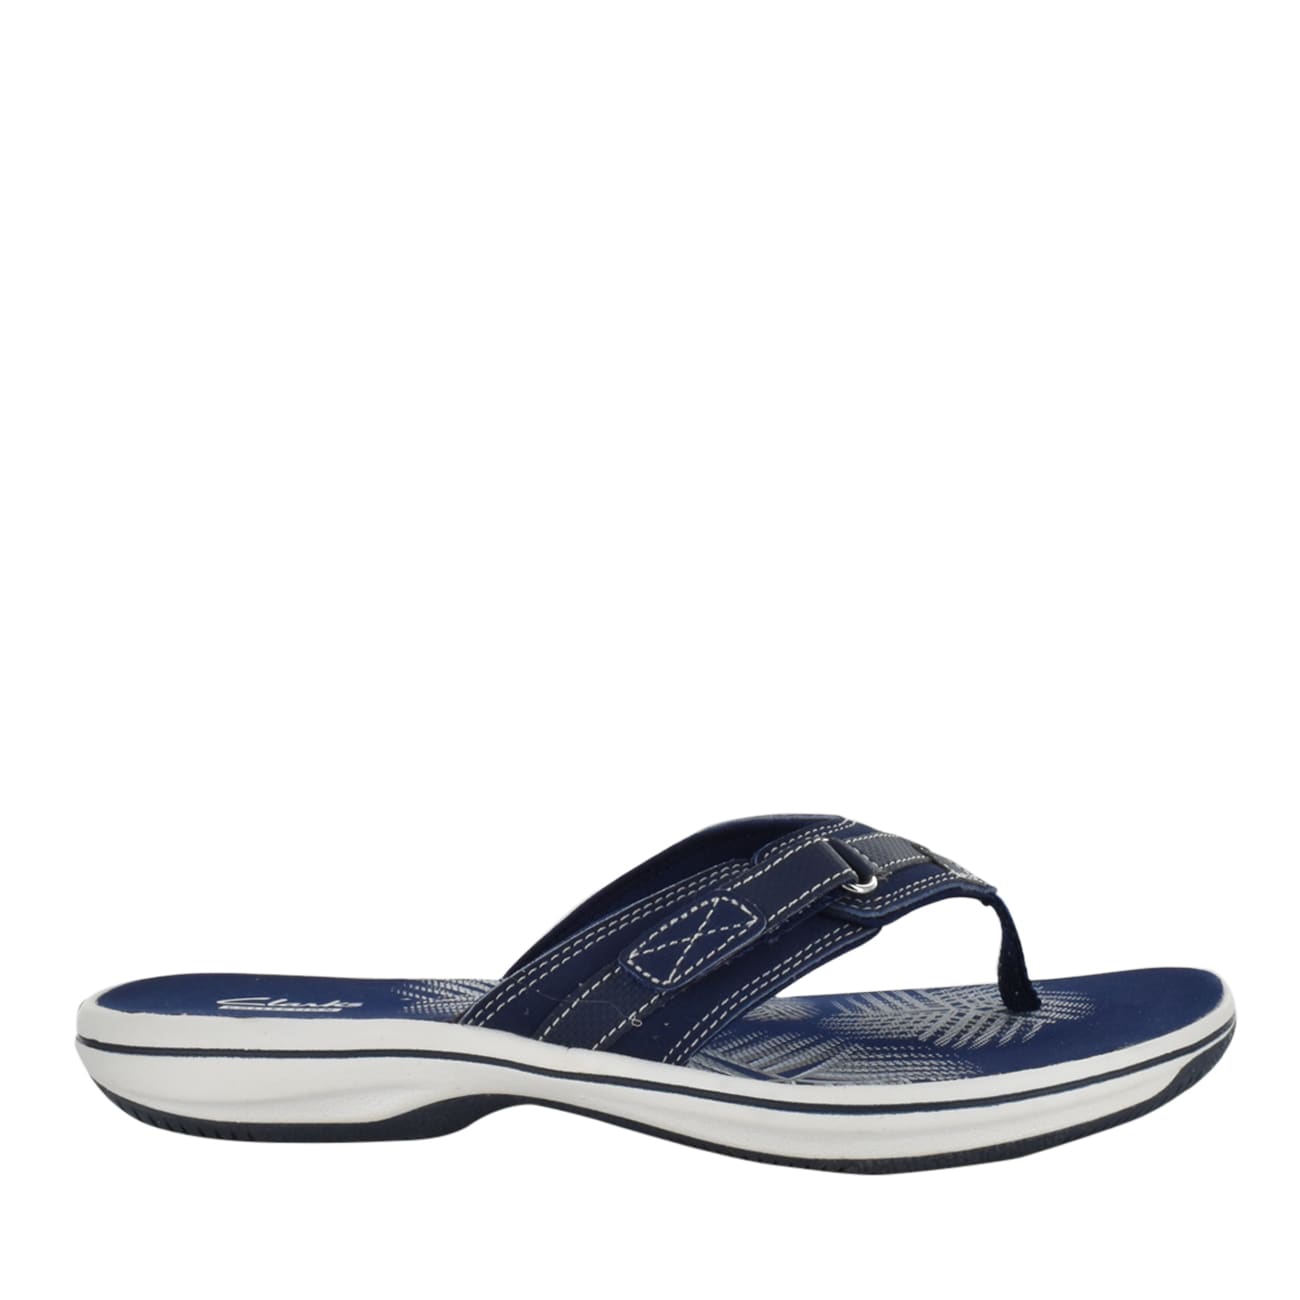 Clarks Breeze Sea Sandal | The Shoe Company